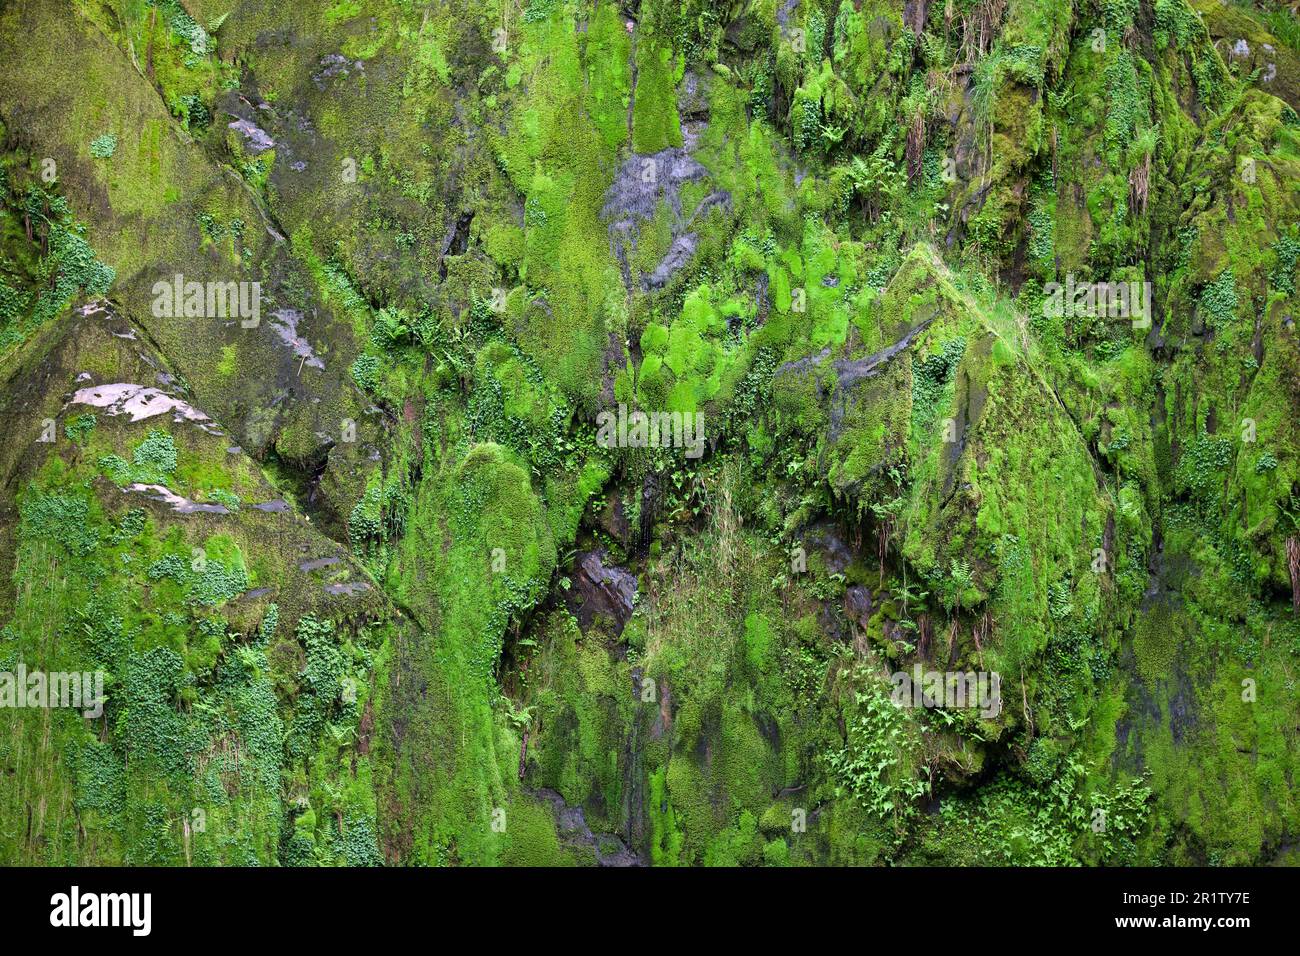 La cascata di Ceunant Mawr si trova nel villaggio di Llanberis in Snowdonia. E 'visto qui durante un periodo asciutto che rivela il giardino di muschio dietro le cascate. Foto Stock